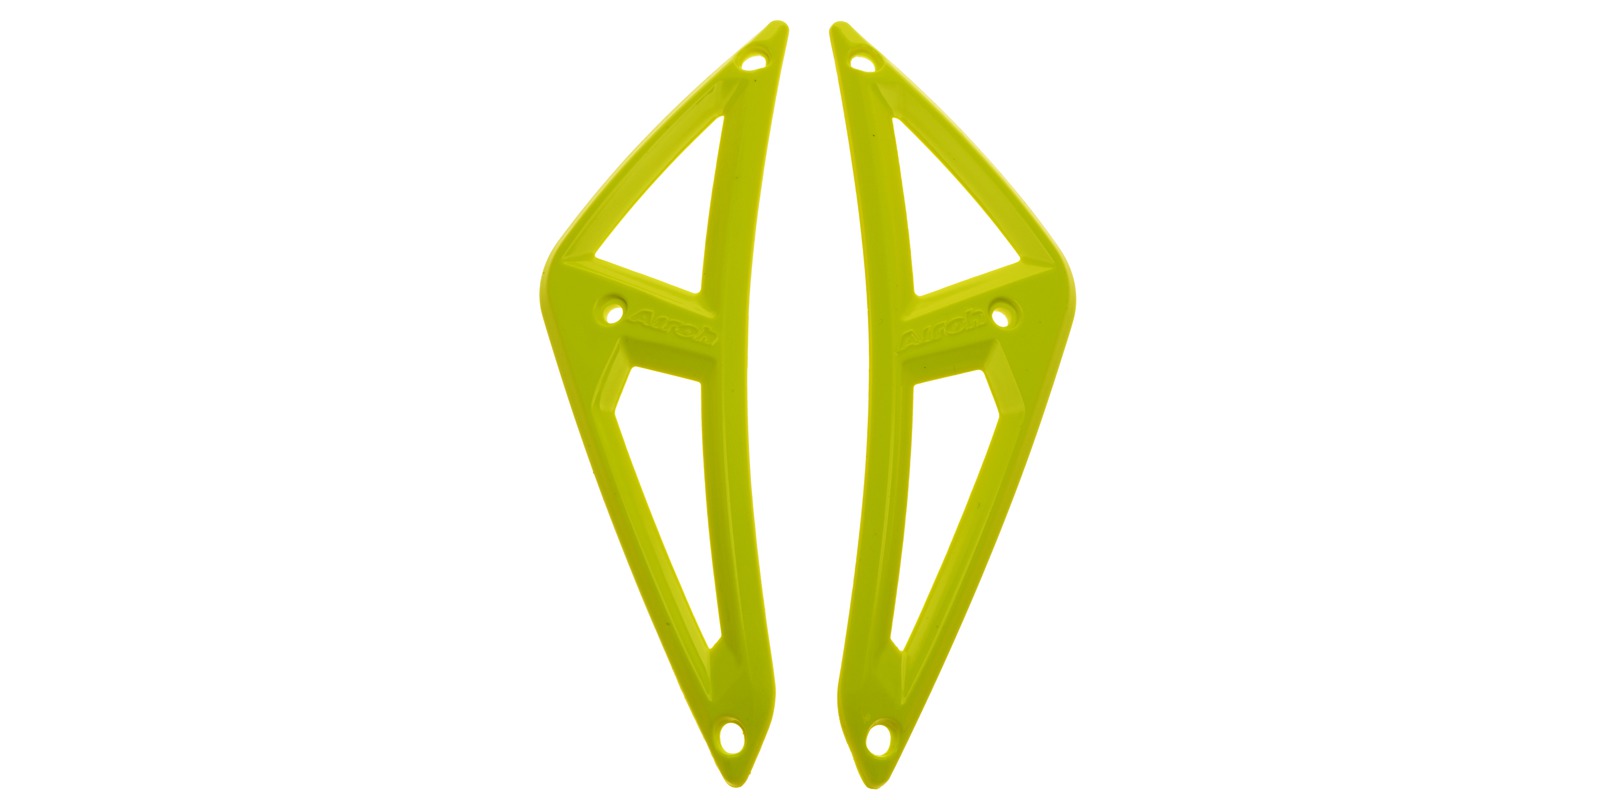 vrchní kryty ventilace pro přilby AVIATOR 2.2, AIROH - Itálie (žluté)